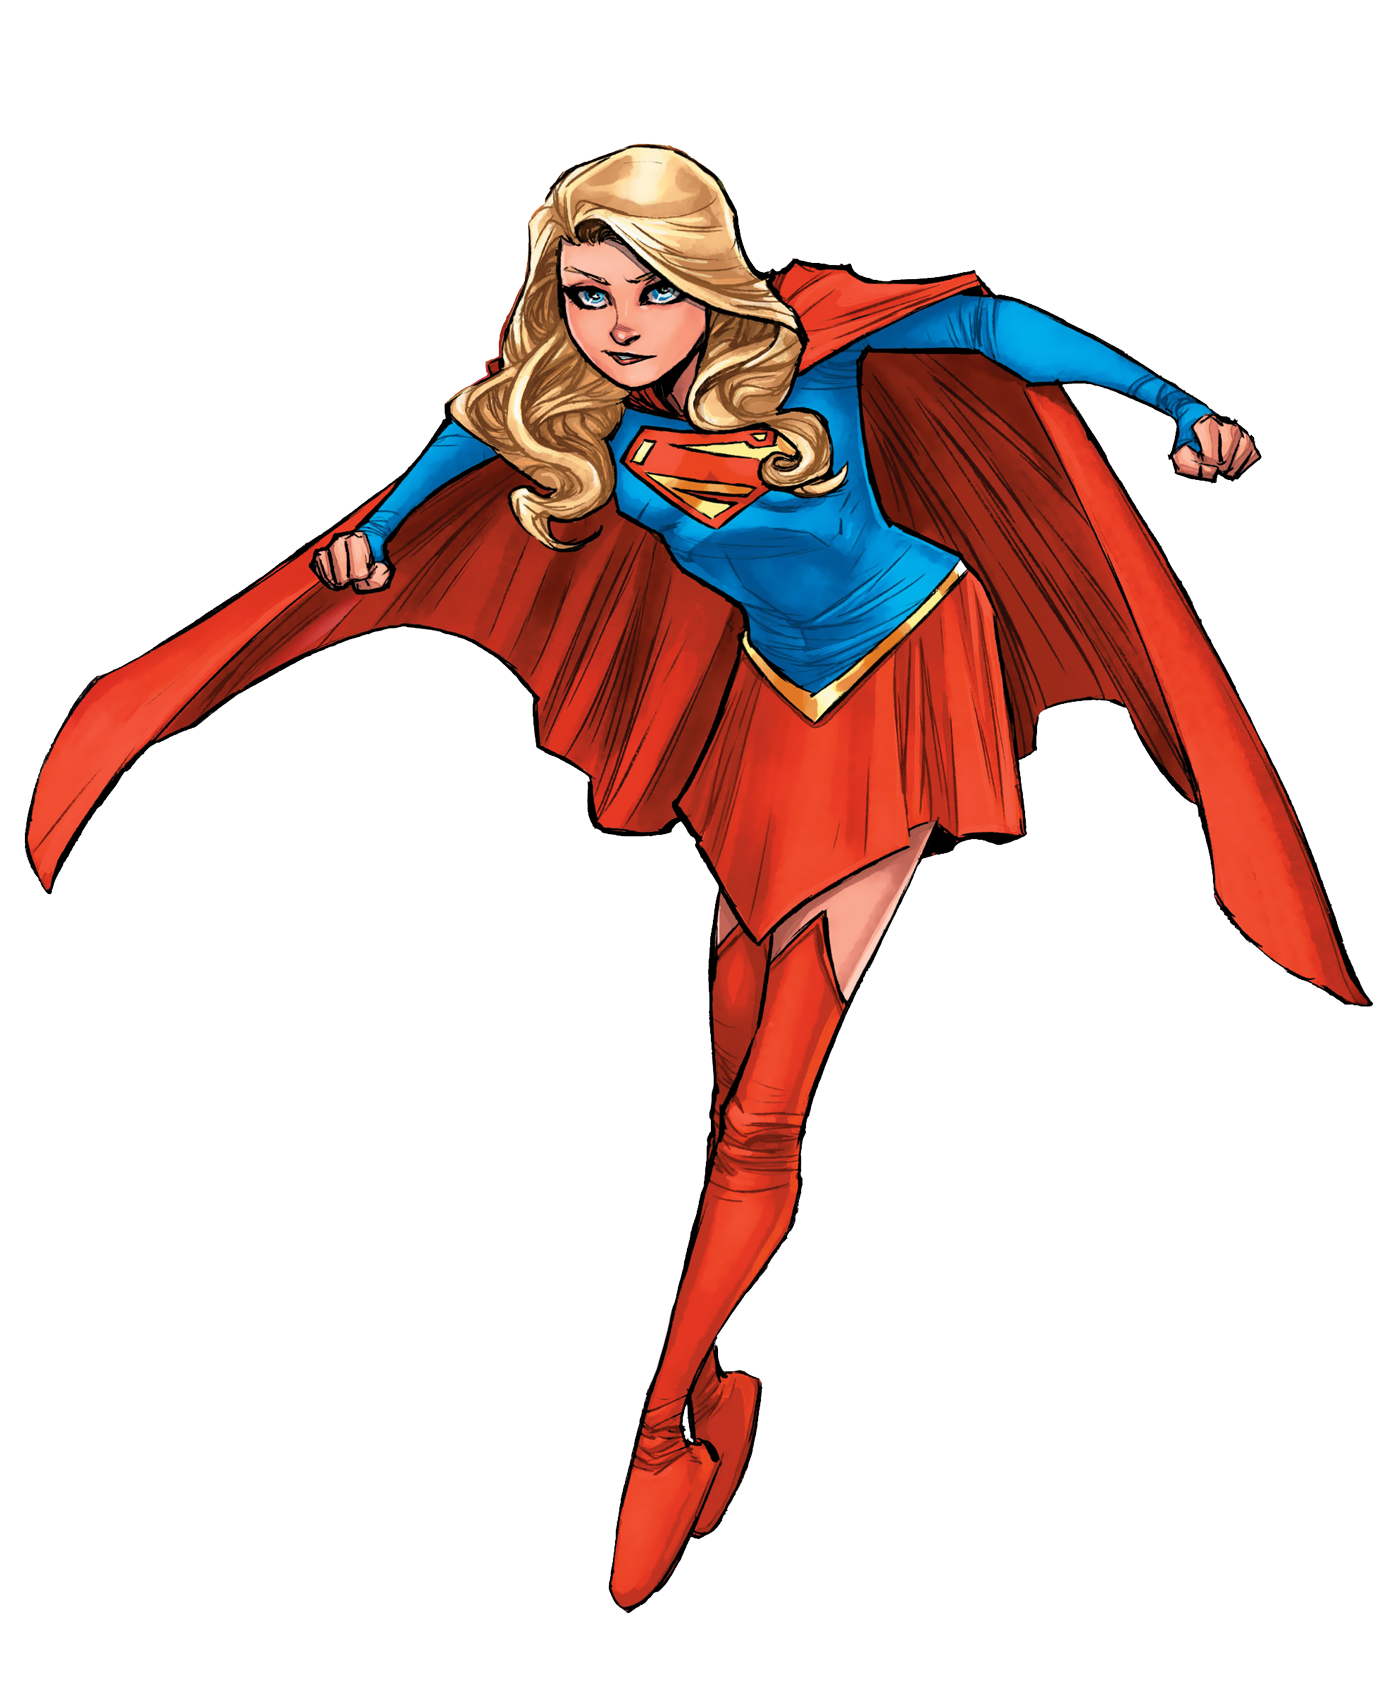 Imagem de supergirl PNG com fundo transparente